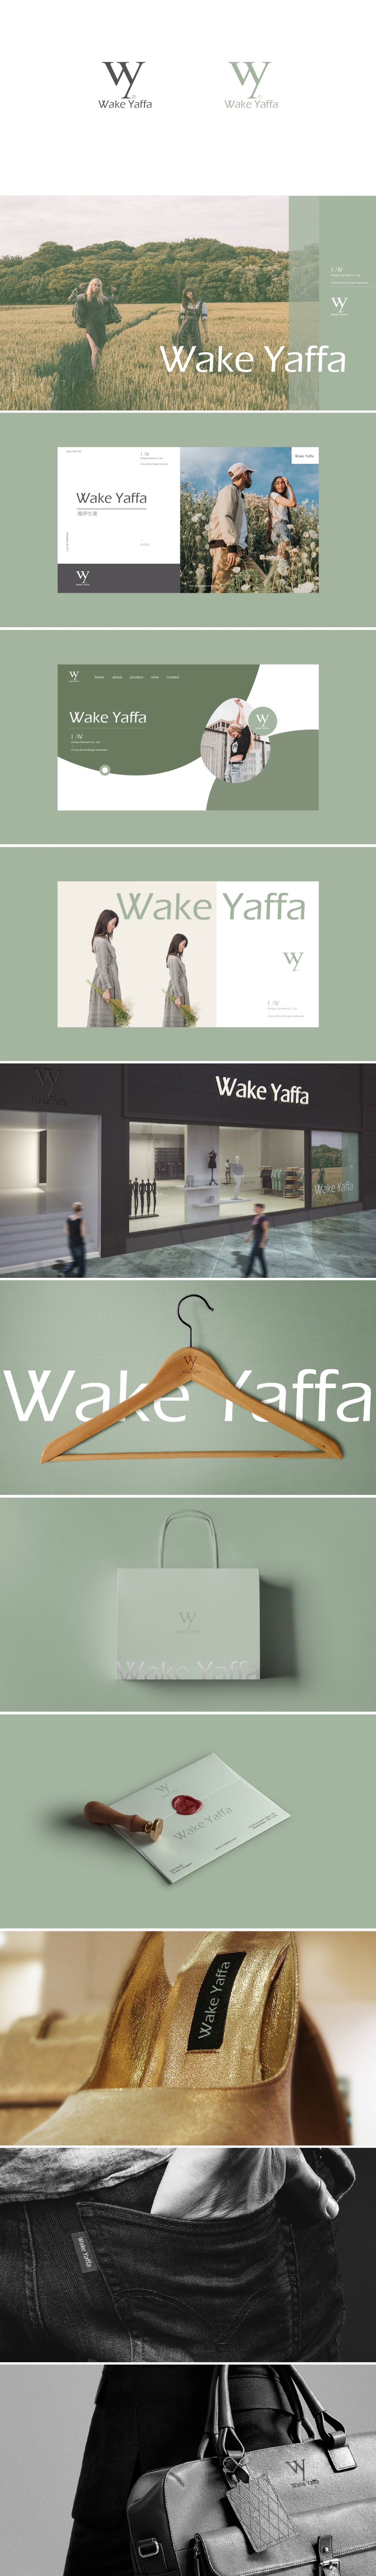 WAKE YAFFA服装标志设计图0